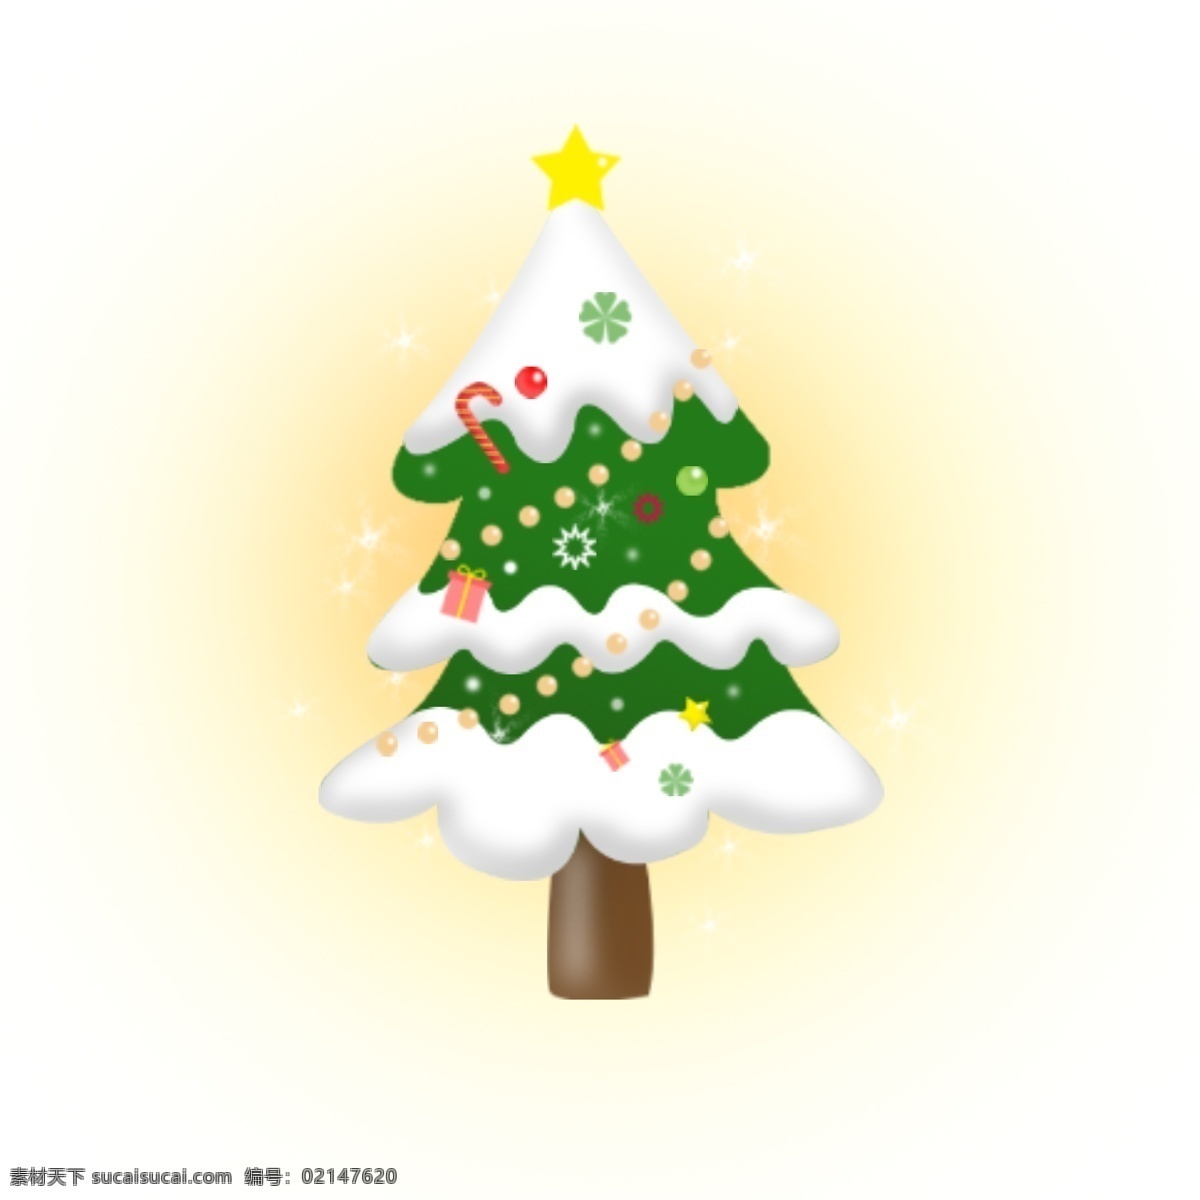 圣诞树 圣诞 矢量 卡通 可爱 商用 元素 几何 发光 可商用